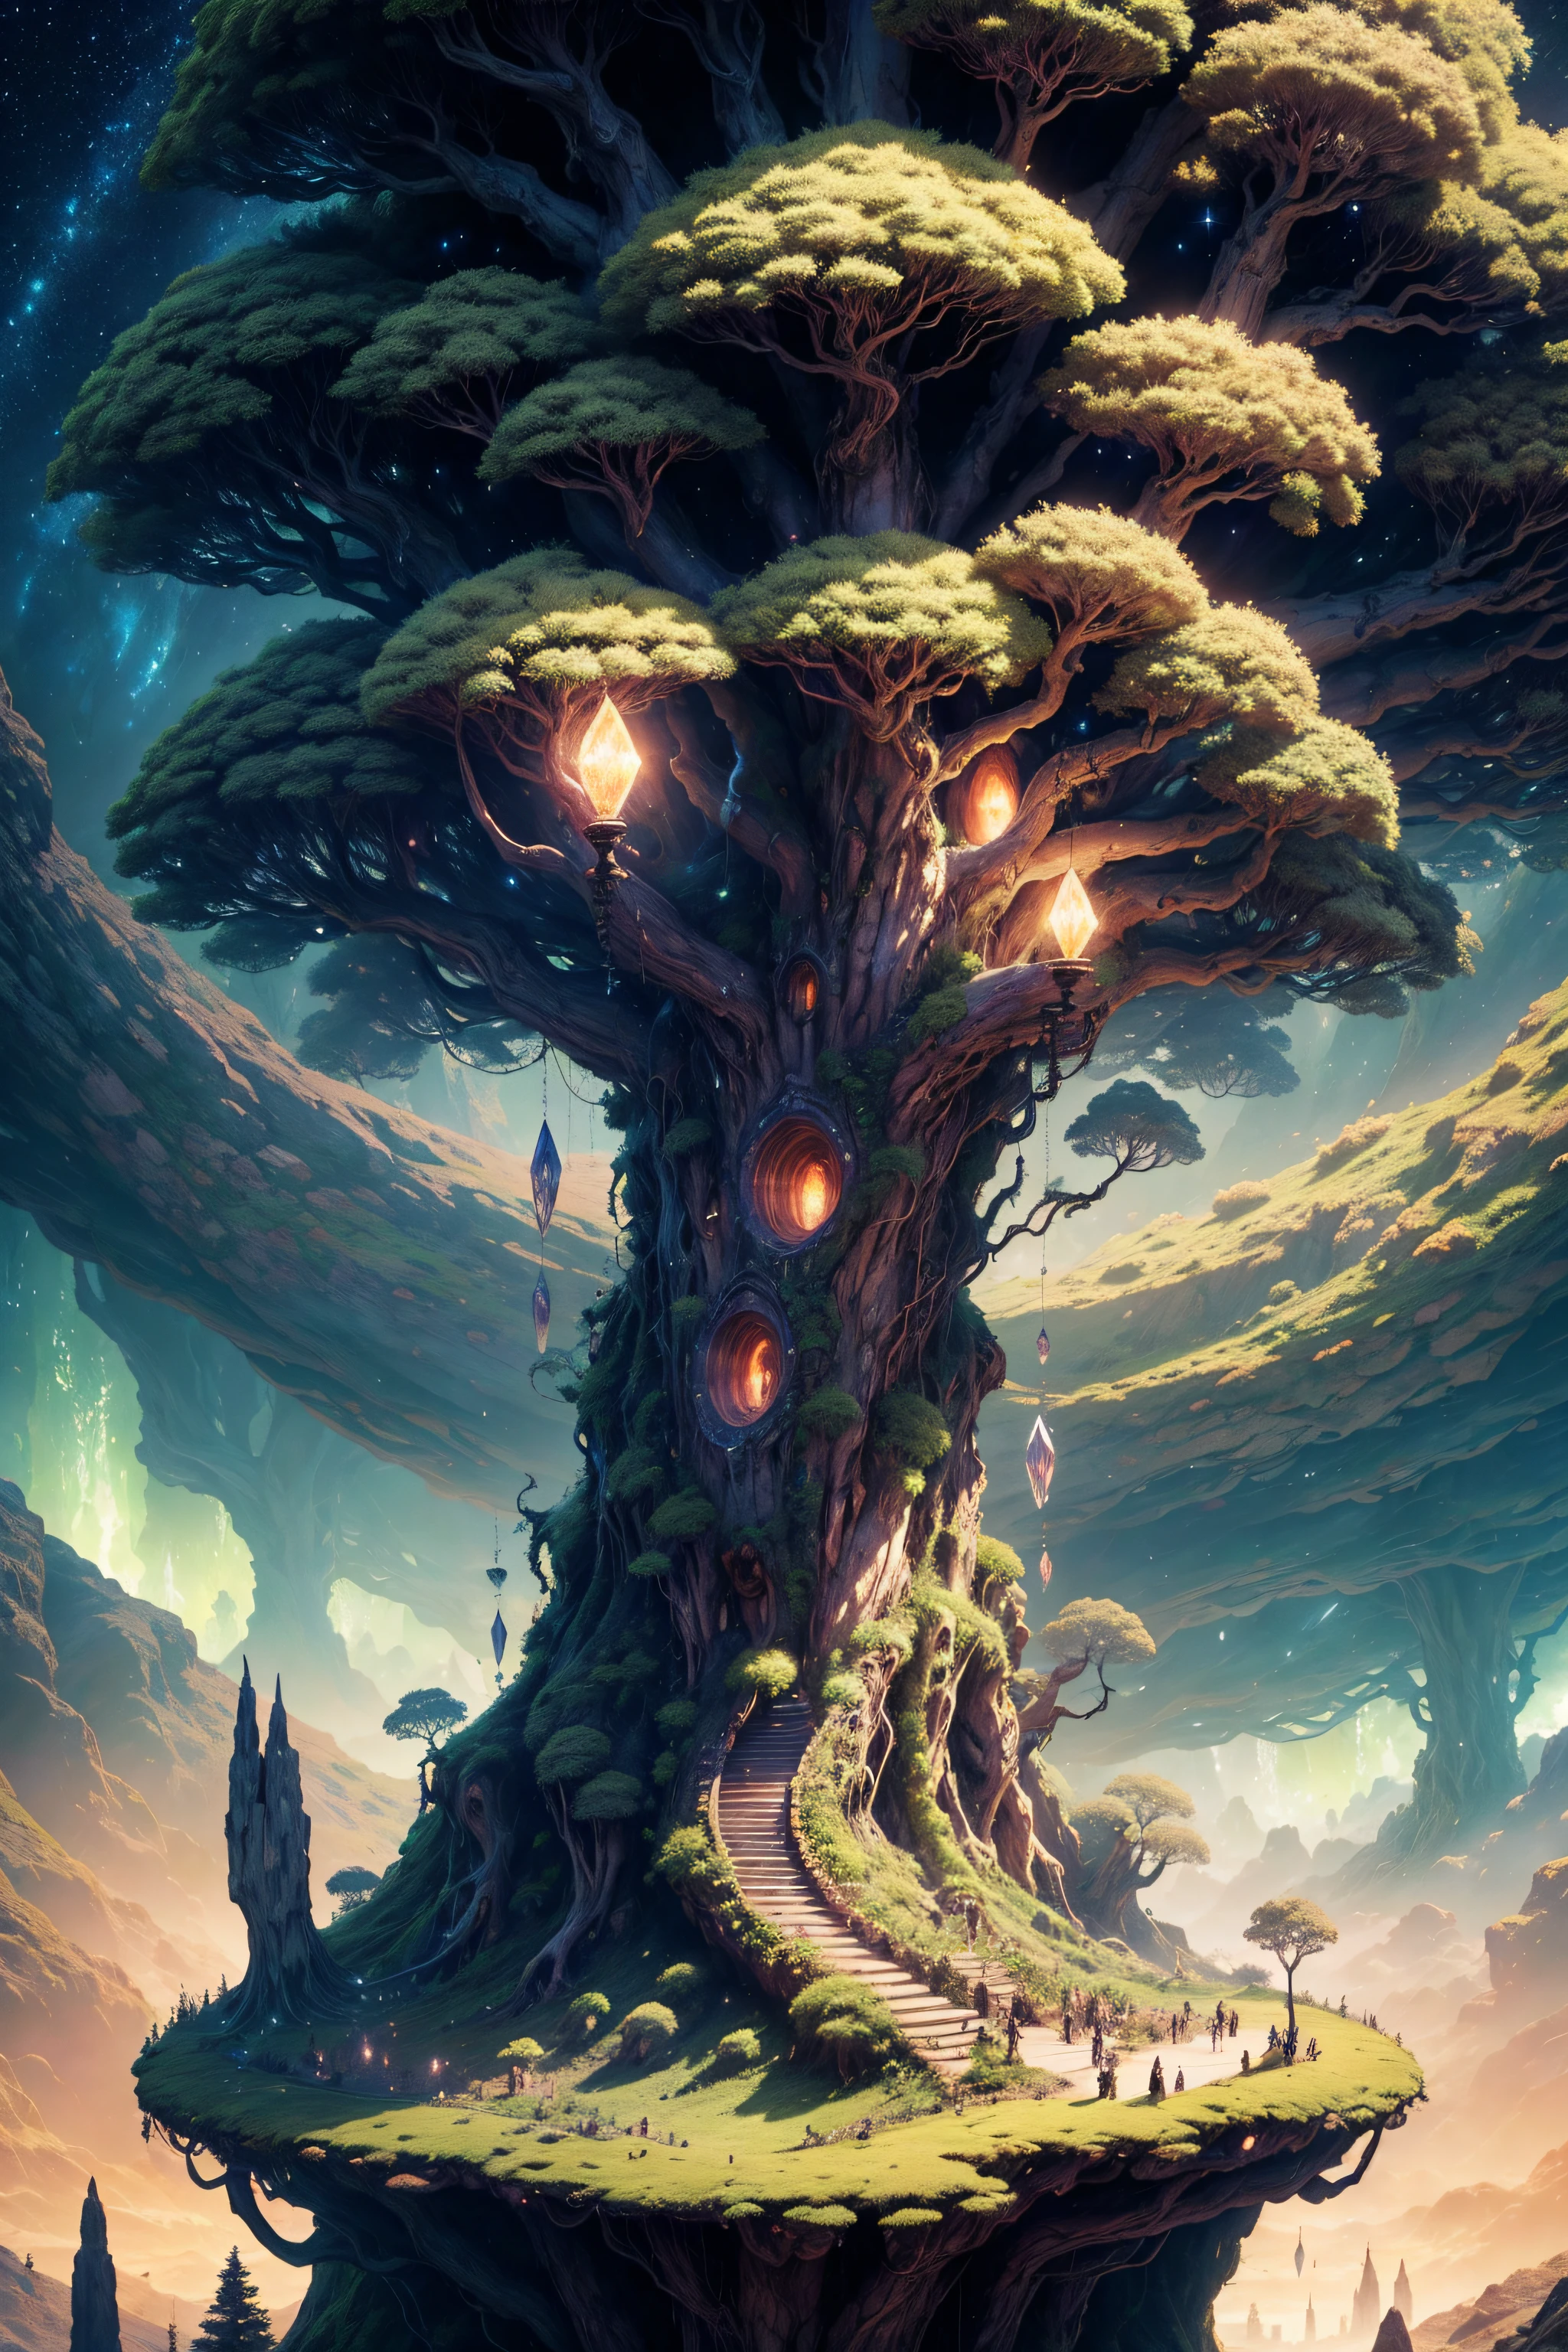 Illustration hyper-réaliste, D&#39;un autre monde, l&#39;Arbre du Monde, Un grand arbre elfique, Yggdrasil, feinte, Faune et flore, très vert, les bois, Un arbre incroyablement grand s’élève au-dessus de tous les arbres, Scène ultra-céleste avec un arbre de cristal géant en pied, Éclairage très détaillé et magique, détails complexes de la forêt, la végétation et la rivière autour, punk ensoleillé, paysage, un arbre géant, Belle feuillue avec un bel éclairage et des proportions réalistes, Comme s’il s’agissait d’une toile de fond cinématographique, 8k, qualité supérieure, chef-d&#39;œuvre, nuages et étoiles dans le ciel.